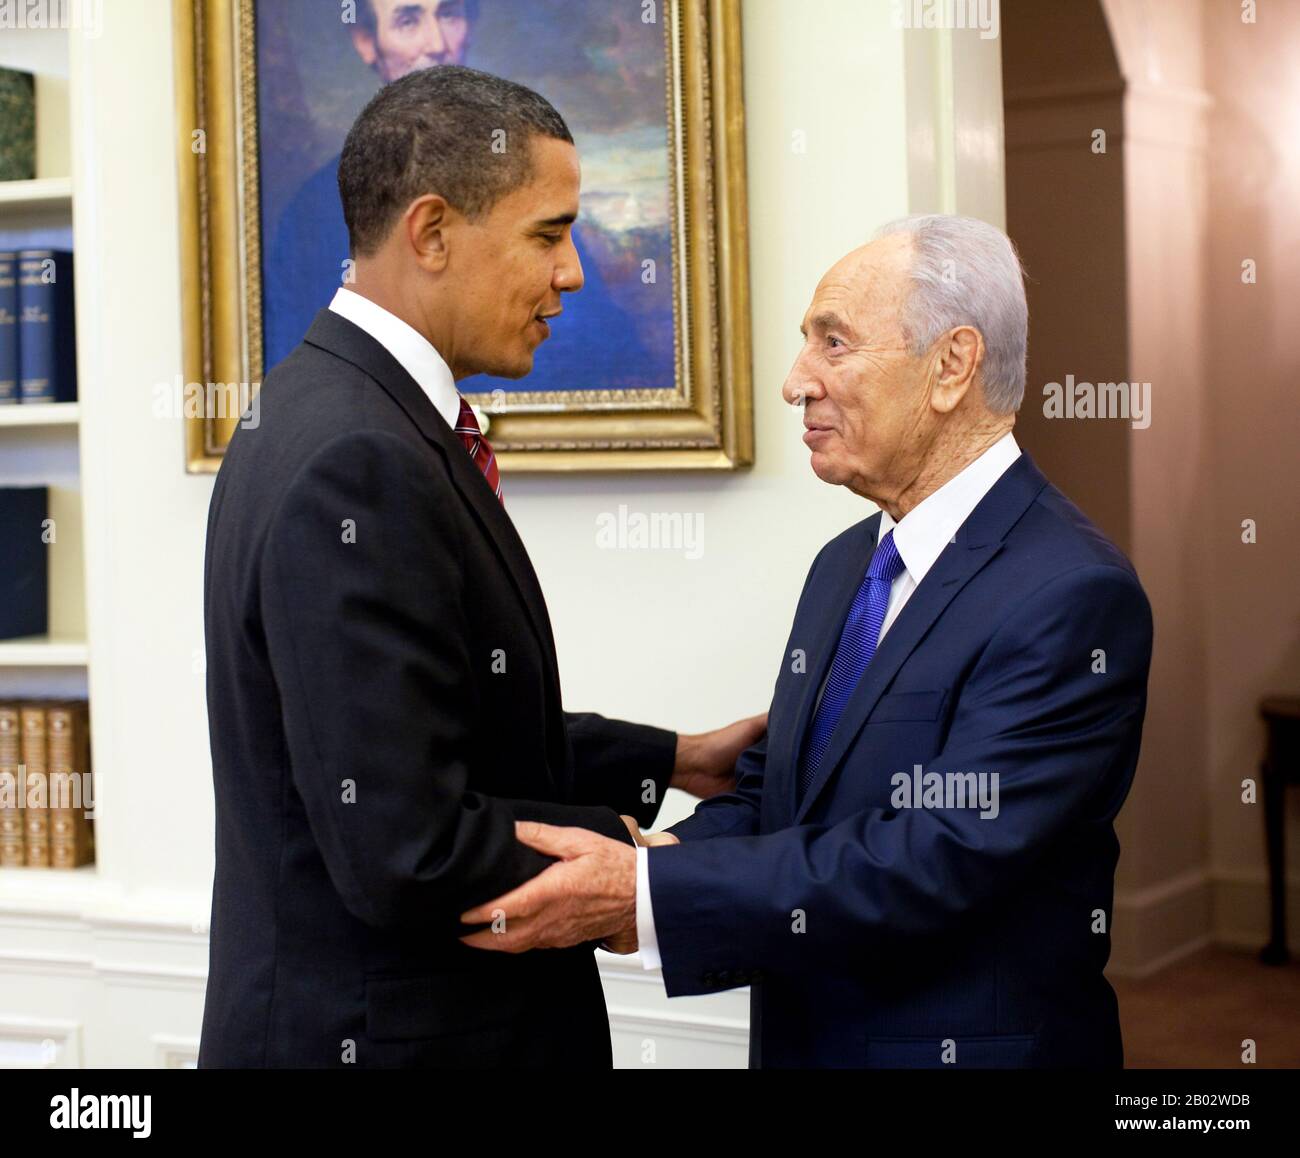 Shimon Peres (* 2. August 1923) ist ein polnischstämmiger israelischer Staatsmann. Er war von 2007 bis 2014 der neunte Präsident Israels. Peres war zweimal Premierminister von Israel und zweimal Interims-Premierminister, und er war Mitglied von 12 Kabinetten in einer über 66 Jahre währenden politischen Laufbahn. Peres wurde im November 1959 in die Knesset gewählt und diente bis auf einen dreimonatigen Hiatus Anfang 2006 ununterbrochen bis 2007, als er Präsident wurde. Während und direkt nach dem israelischen Unabhängigkeitskrieg bekleidete er mehrere diplomatische und militärische Positionen. Seine erste hochrangige Regierung p Stockfoto